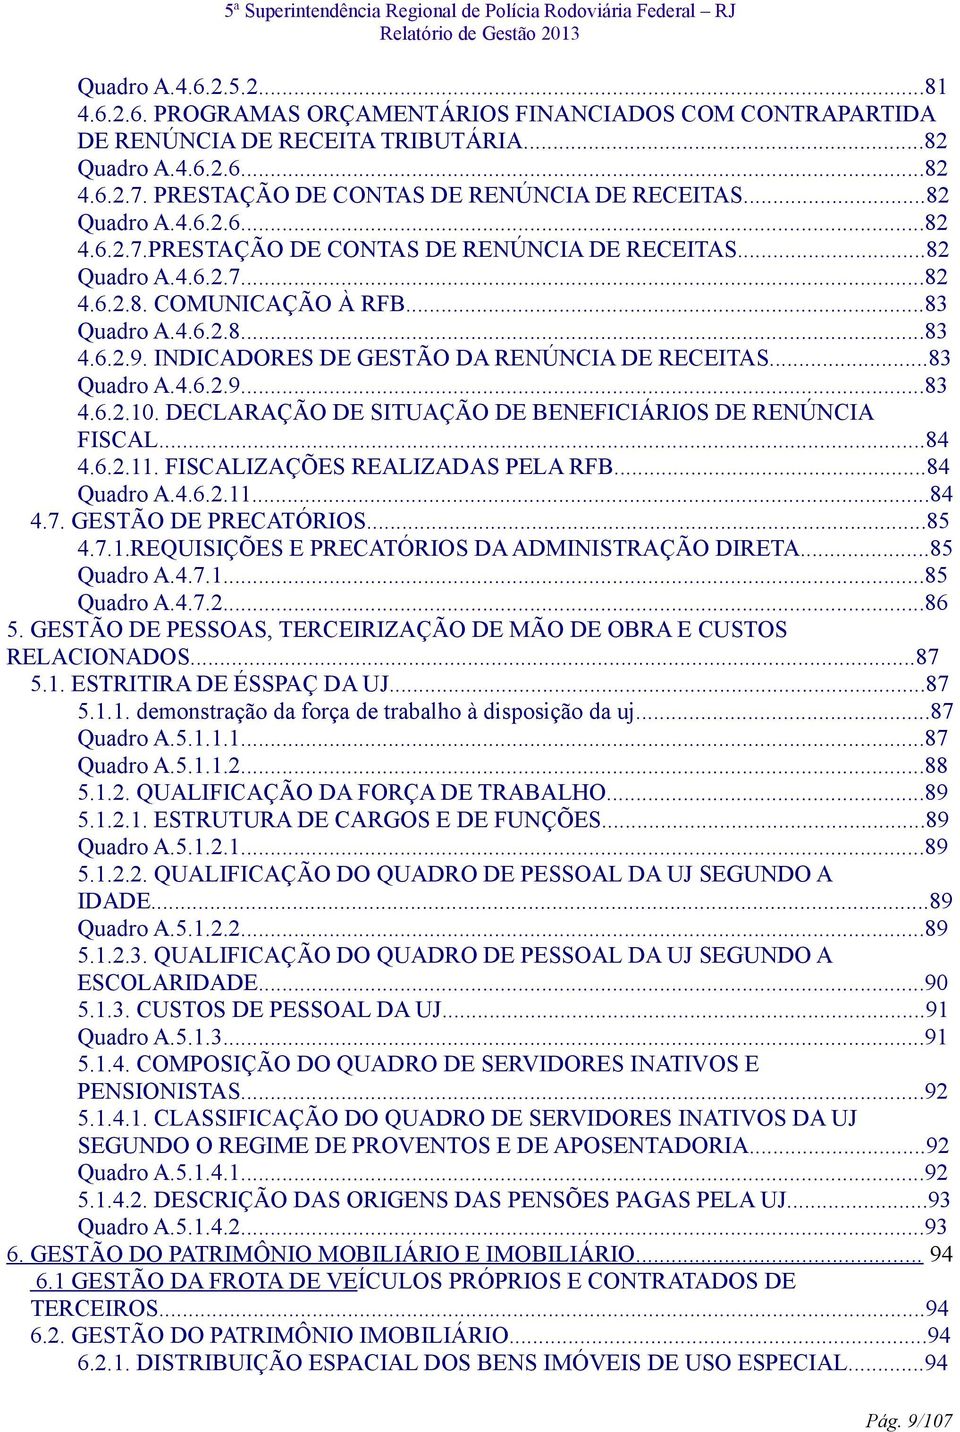 6.2.9. INDICADORES DE GESTÃO DA RENÚNCIA DE RECEITAS...83 Quadro A.4.6.2.9...83 4.6.2.10. DECLARAÇÃO DE SITUAÇÃO DE BENEFICIÁRIOS DE RENÚNCIA FISCAL...84 4.6.2.11. FISCALIZAÇÕES REALIZADAS PELA RFB.